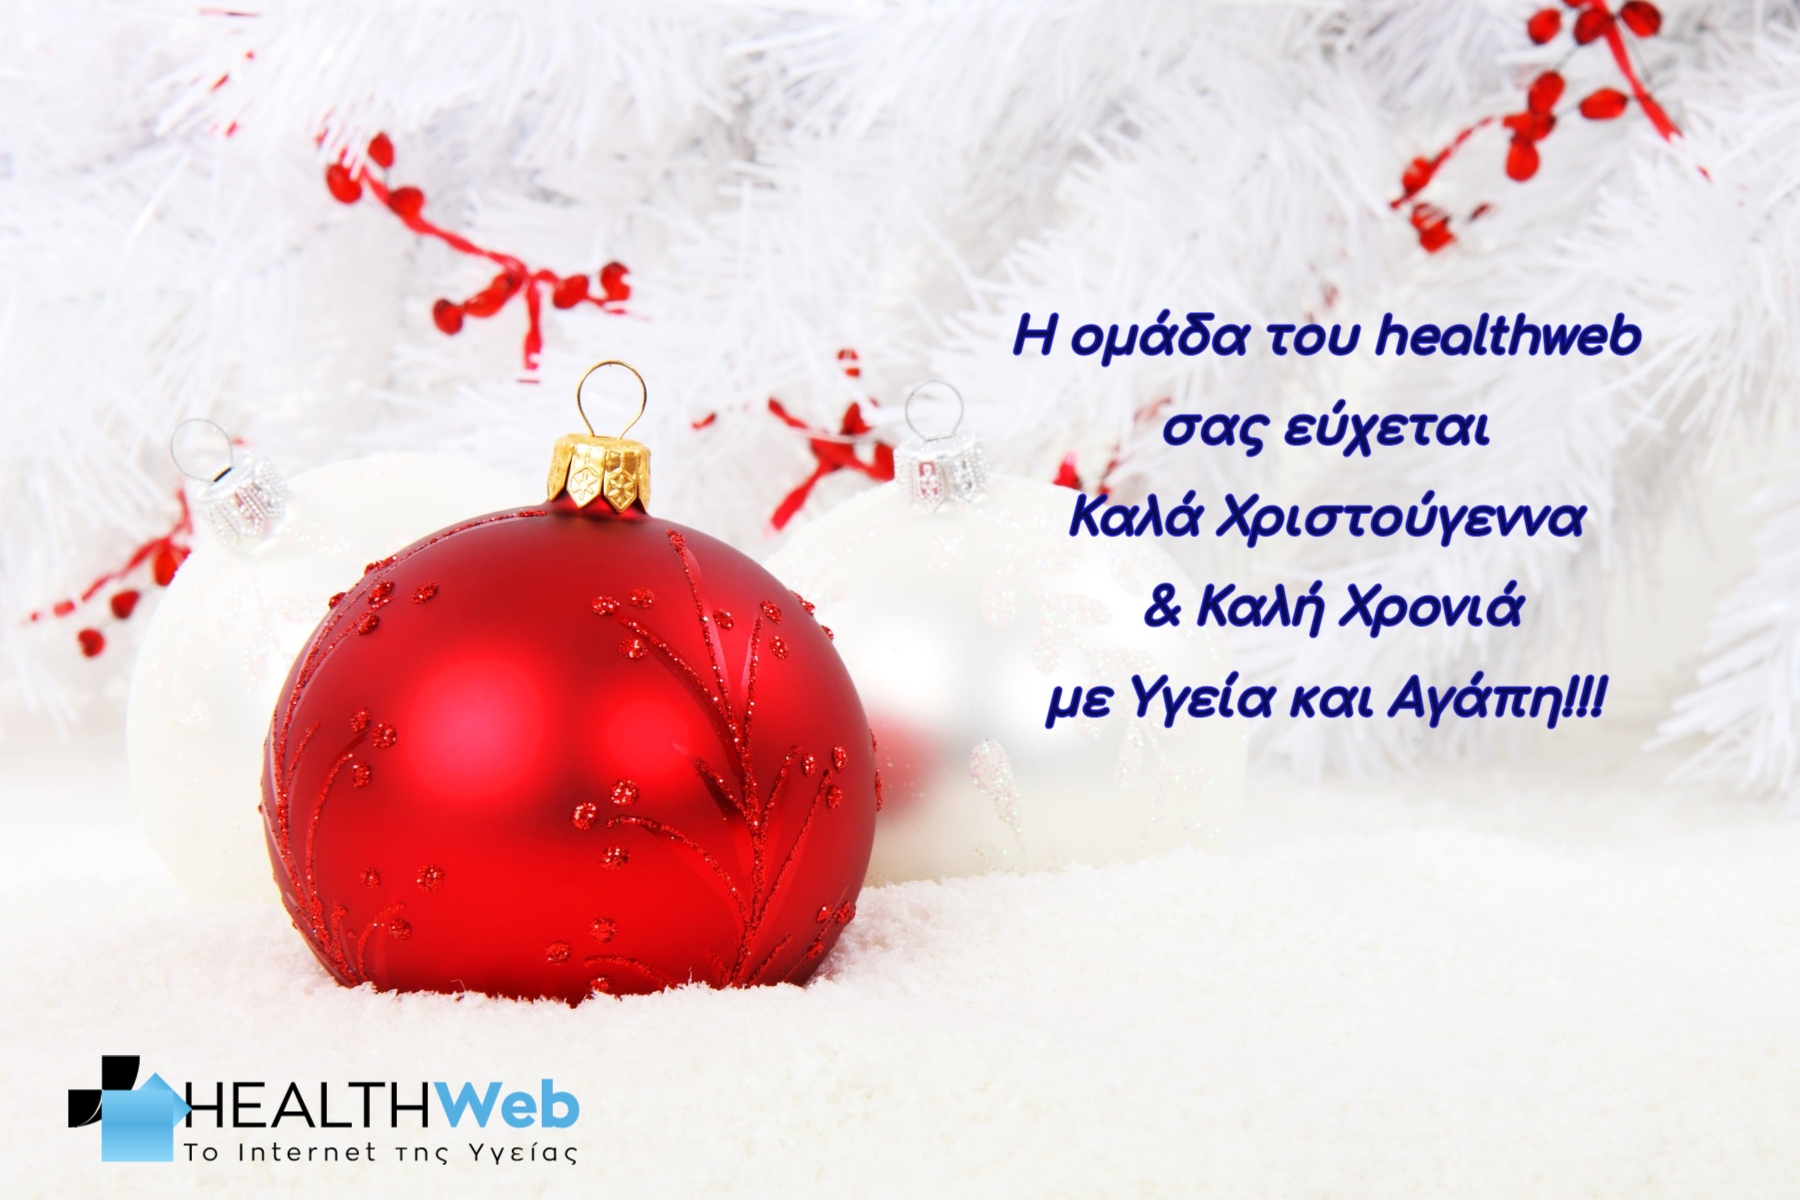 Η οικογένεια του healthweb σας εύχεται Καλά Χριστούγεννα με Υγεία και Αγάπη!